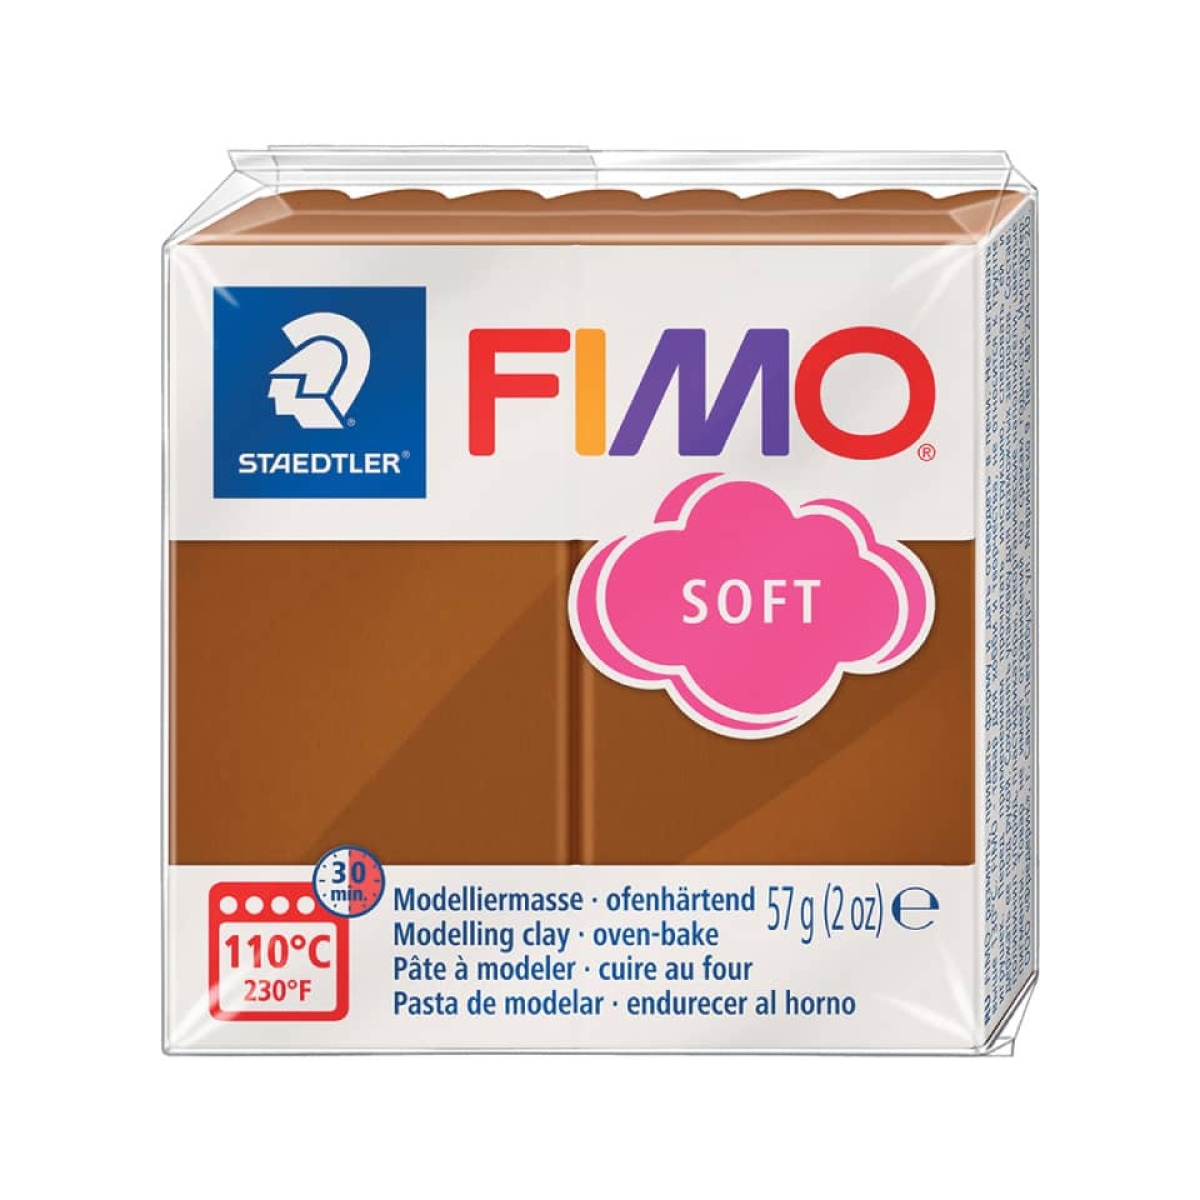 STAEDTLERModelliermasse FIMO® soft, 57 g, caramel 8020-7-Preis für 0.0570 kgArtikel-Nr: 4006608809799